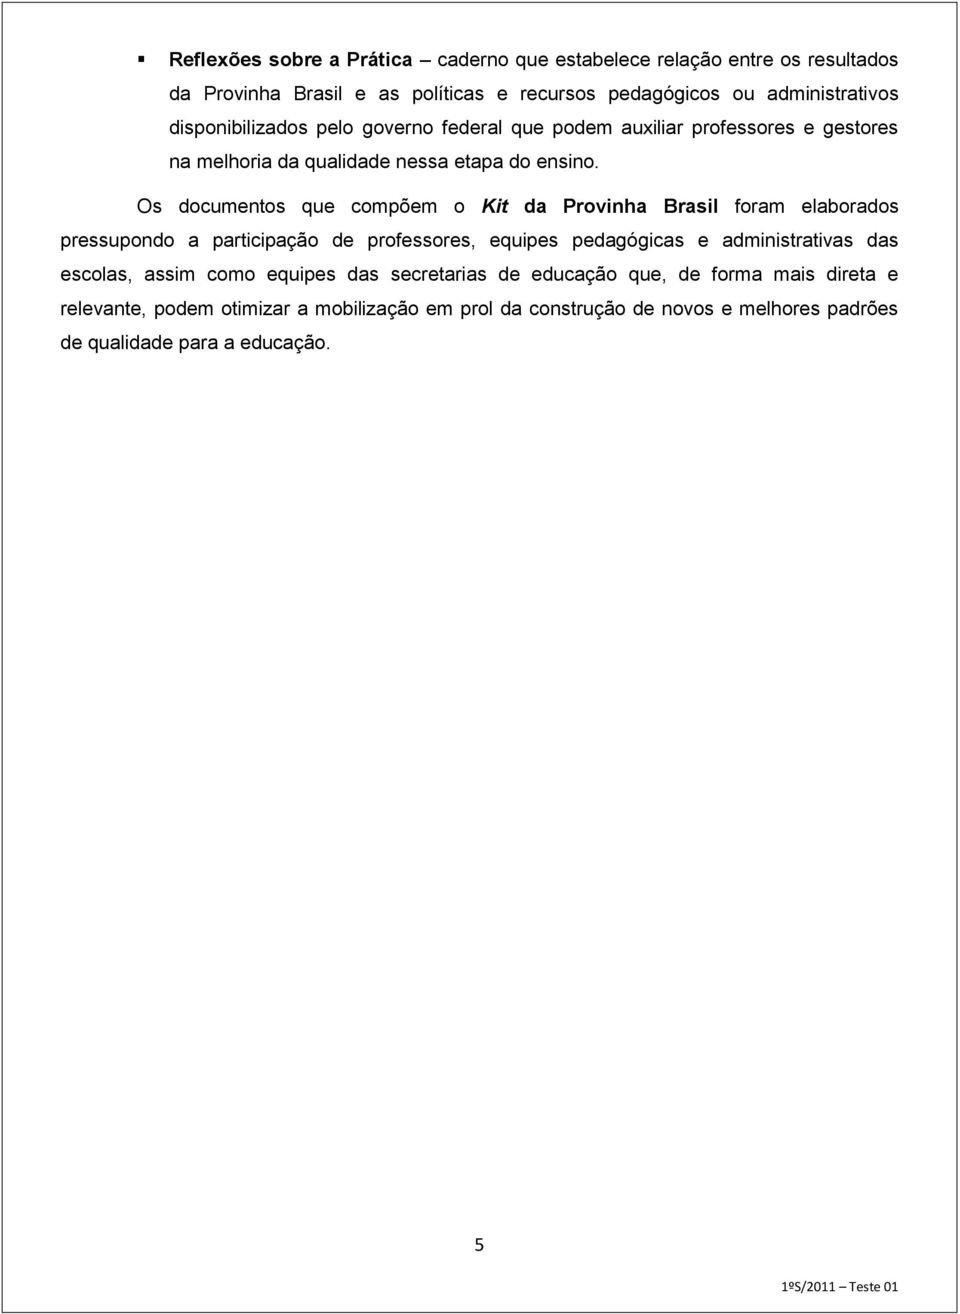 Os documentos que compõem o Kit da Provinha Brasil foram elaborados pressupondo a participação de professores, equipes pedagógicas e administrativas das